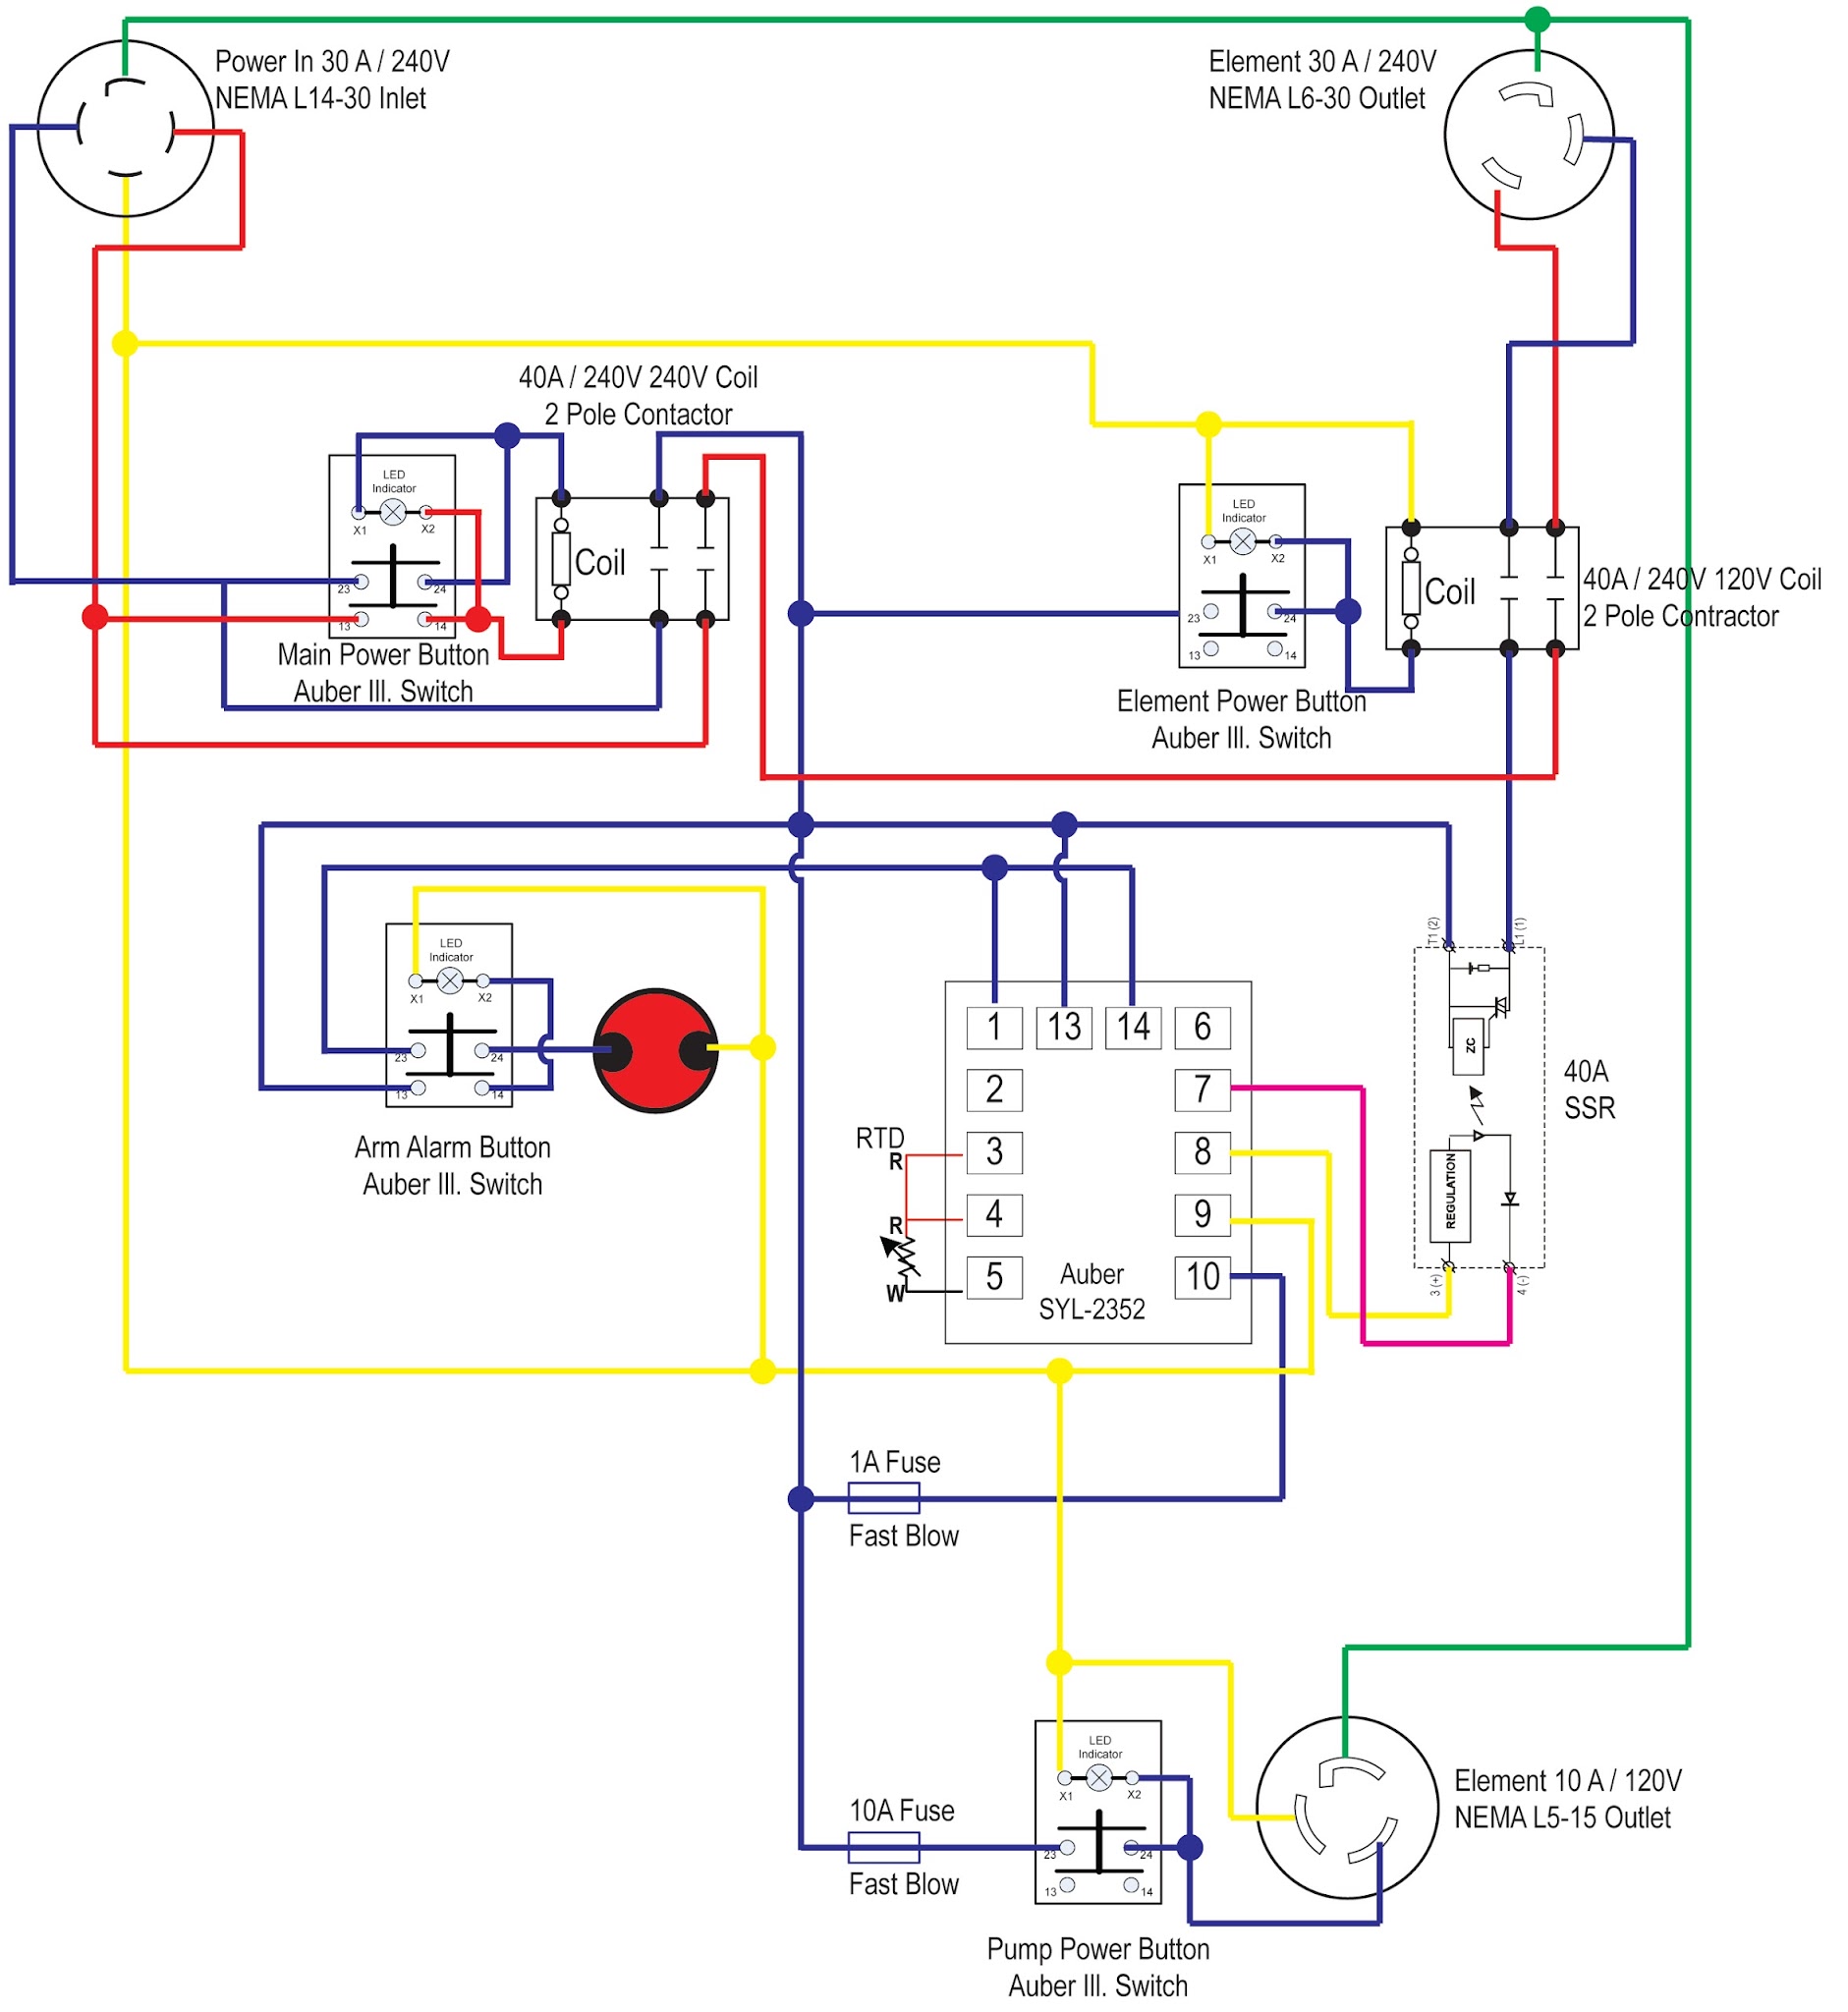 wiring-diagram.jpg